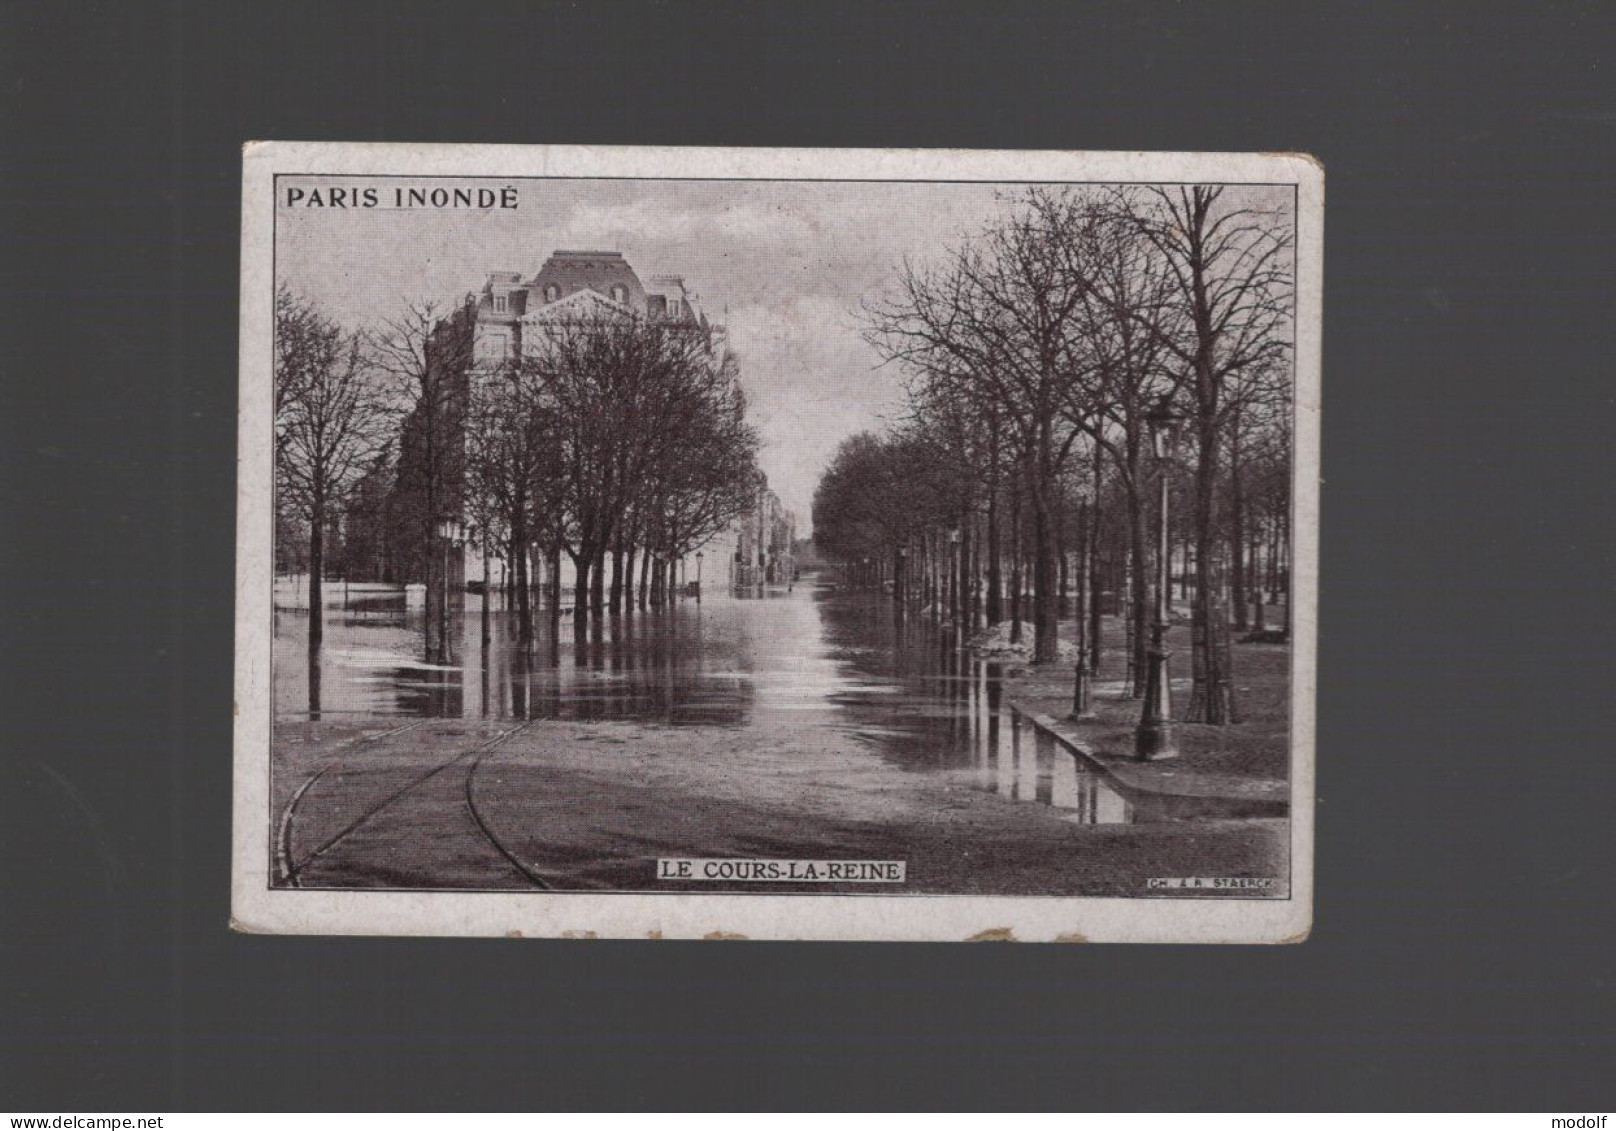 CPA - 75 - Paris Inondé - Le Cours-la-Reine - Paris Flood, 1910